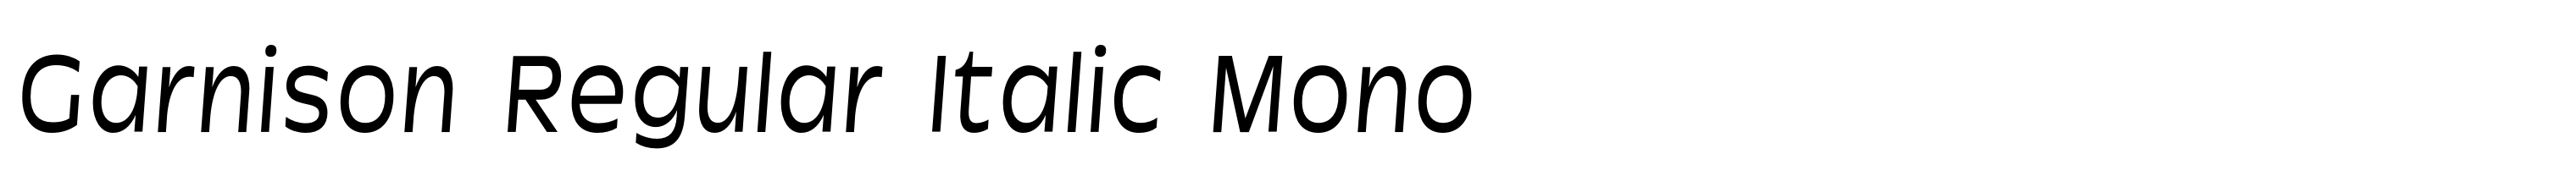 Garnison Regular Italic Mono